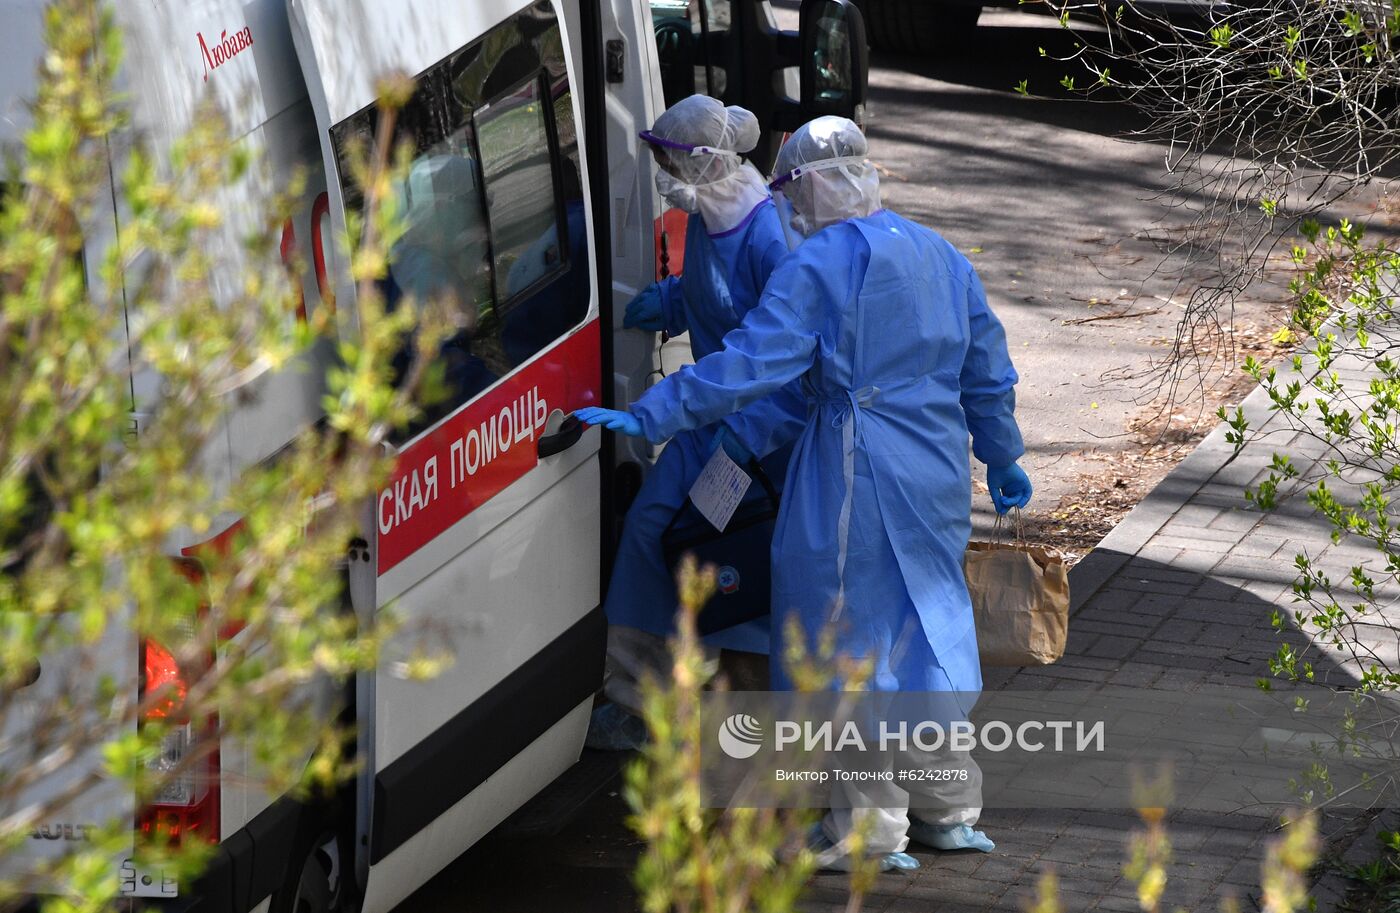 Ситуация в Минске в связи с коронавирусом